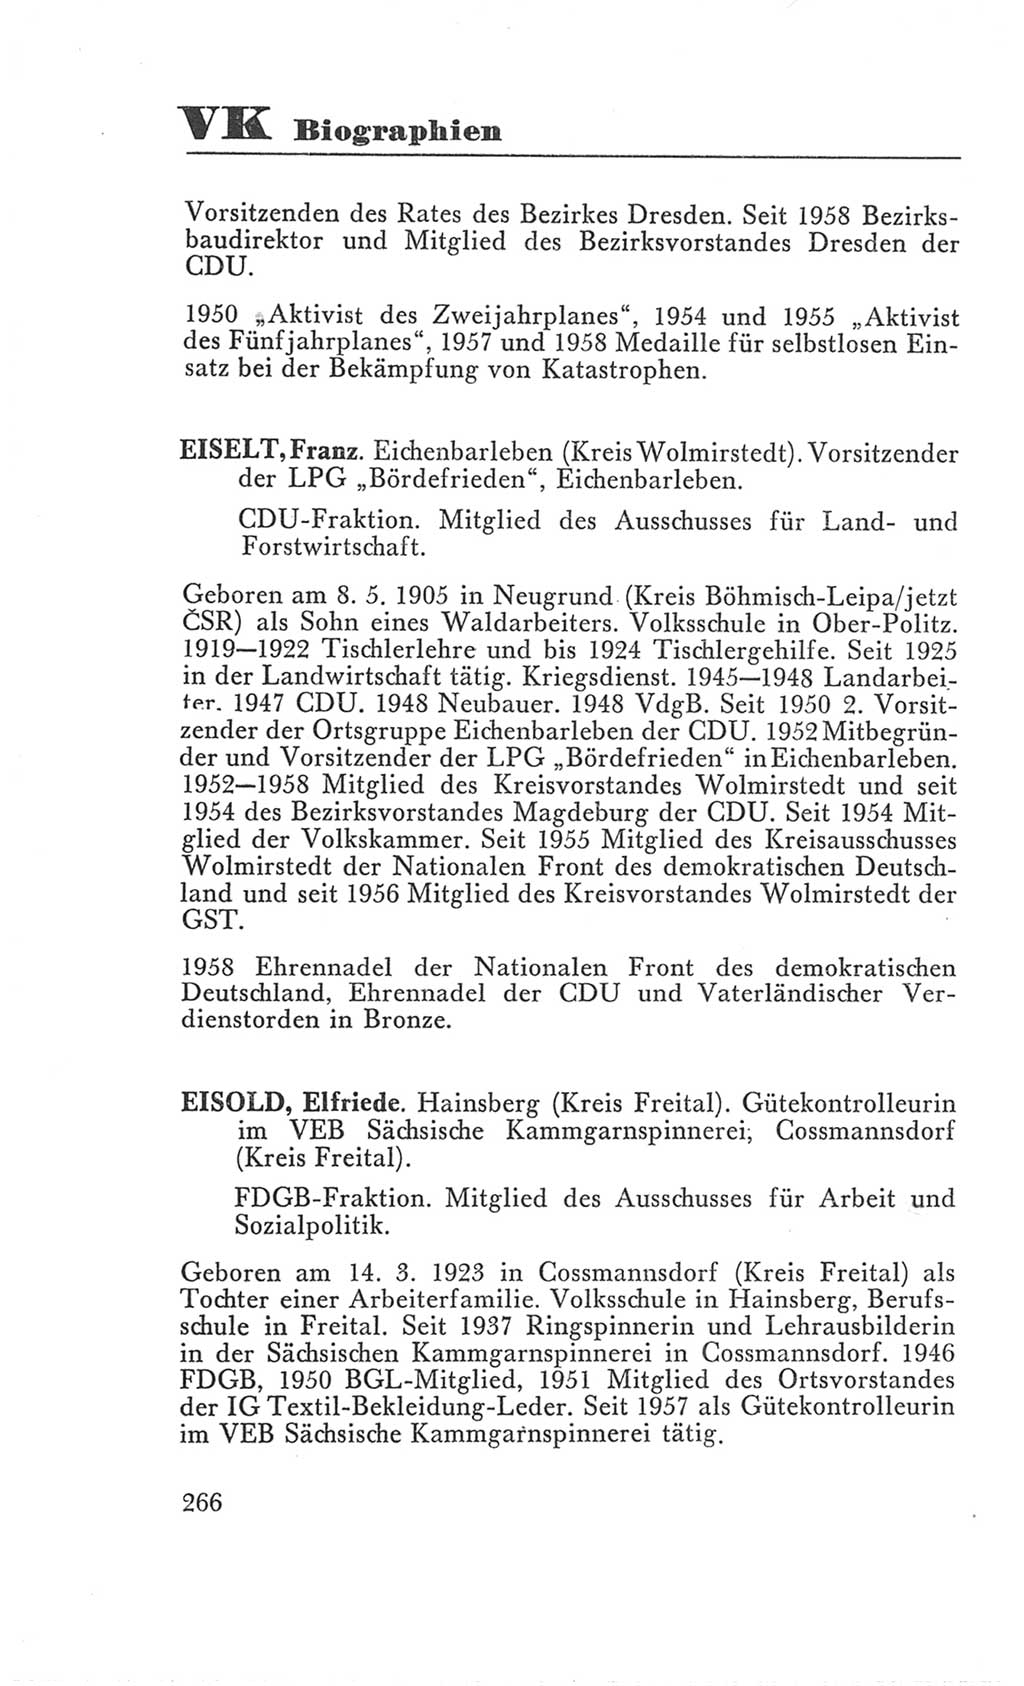 Handbuch der Volkskammer (VK) der Deutschen Demokratischen Republik (DDR), 3. Wahlperiode 1958-1963, Seite 266 (Hdb. VK. DDR 3. WP. 1958-1963, S. 266)